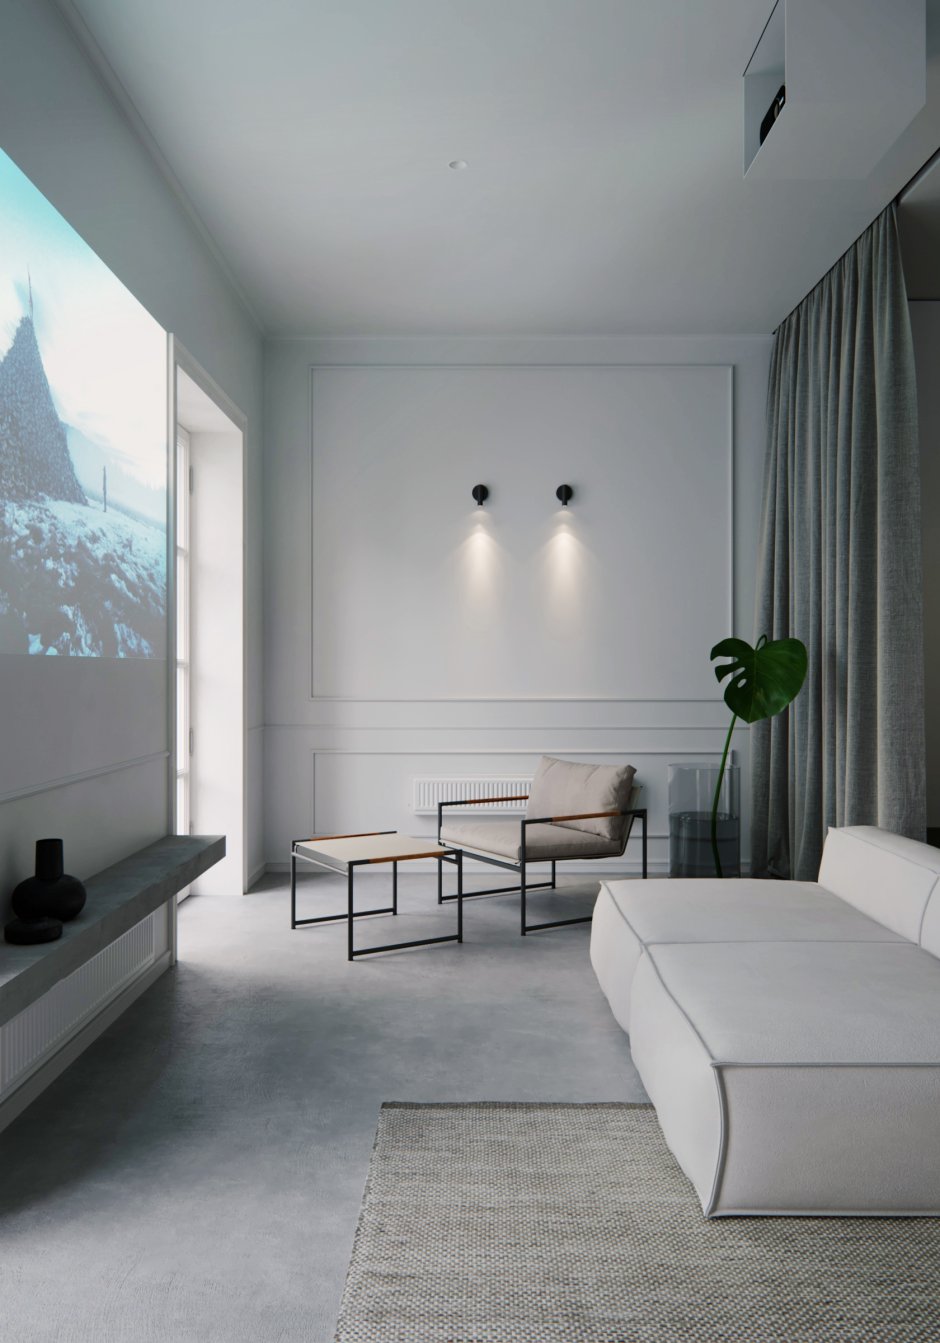 Zen minimalist room design